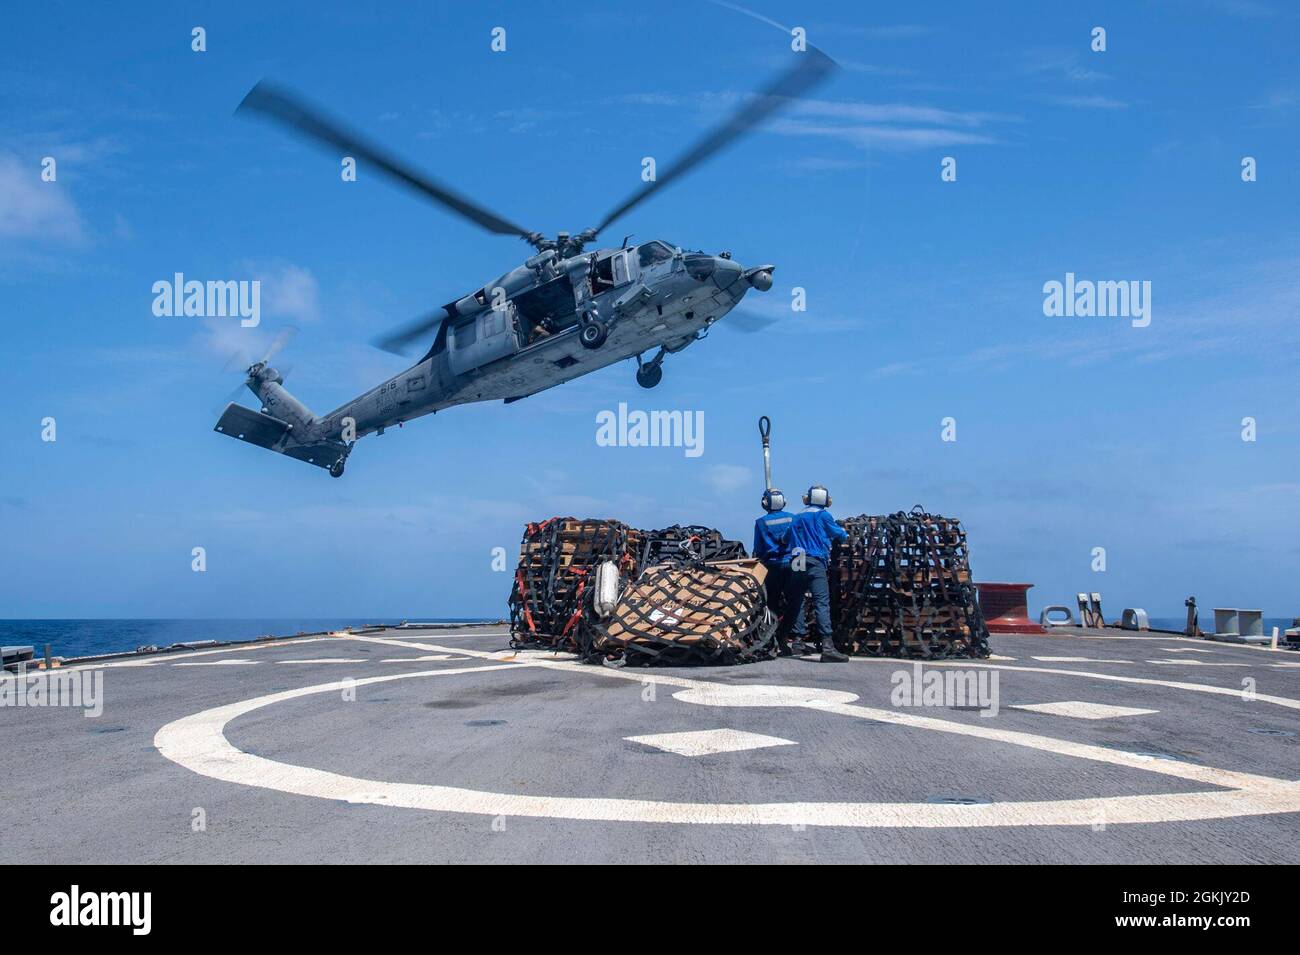 ARABISCHES MEER (8. Mai 2021) – Boatswain’s Mate 3. Klasse Nathaniel Yost, links, Und Gaskurbinensystemtechniker (Mechanical) der 3. Klasse Jason Bird, beide dem Lenkraketen-Zerstörer USS Laboon (DDG 58) zugewiesen, bereiten sich darauf vor, während einer vertikalen Auffüllung auf See im Arabischen Meer, Mai 8, Fracht an einen Hubschrauber der MH-60S Sea Hawk, der an die „Dusty Dogs“ des Helicopter Sea Combat Squadron 7 befestigt ist, zu befestigen. Laboon arbeitet mit der IKE Carrier Strike Group zusammen, während er im Einsatzgebiet der 5. US-Flotte zur Unterstützung von Marineoperationen und zur Bereitstellung von Luftkraft zum Schutz der US- und Koalitionstruppen eingesetzt wird Stockfoto